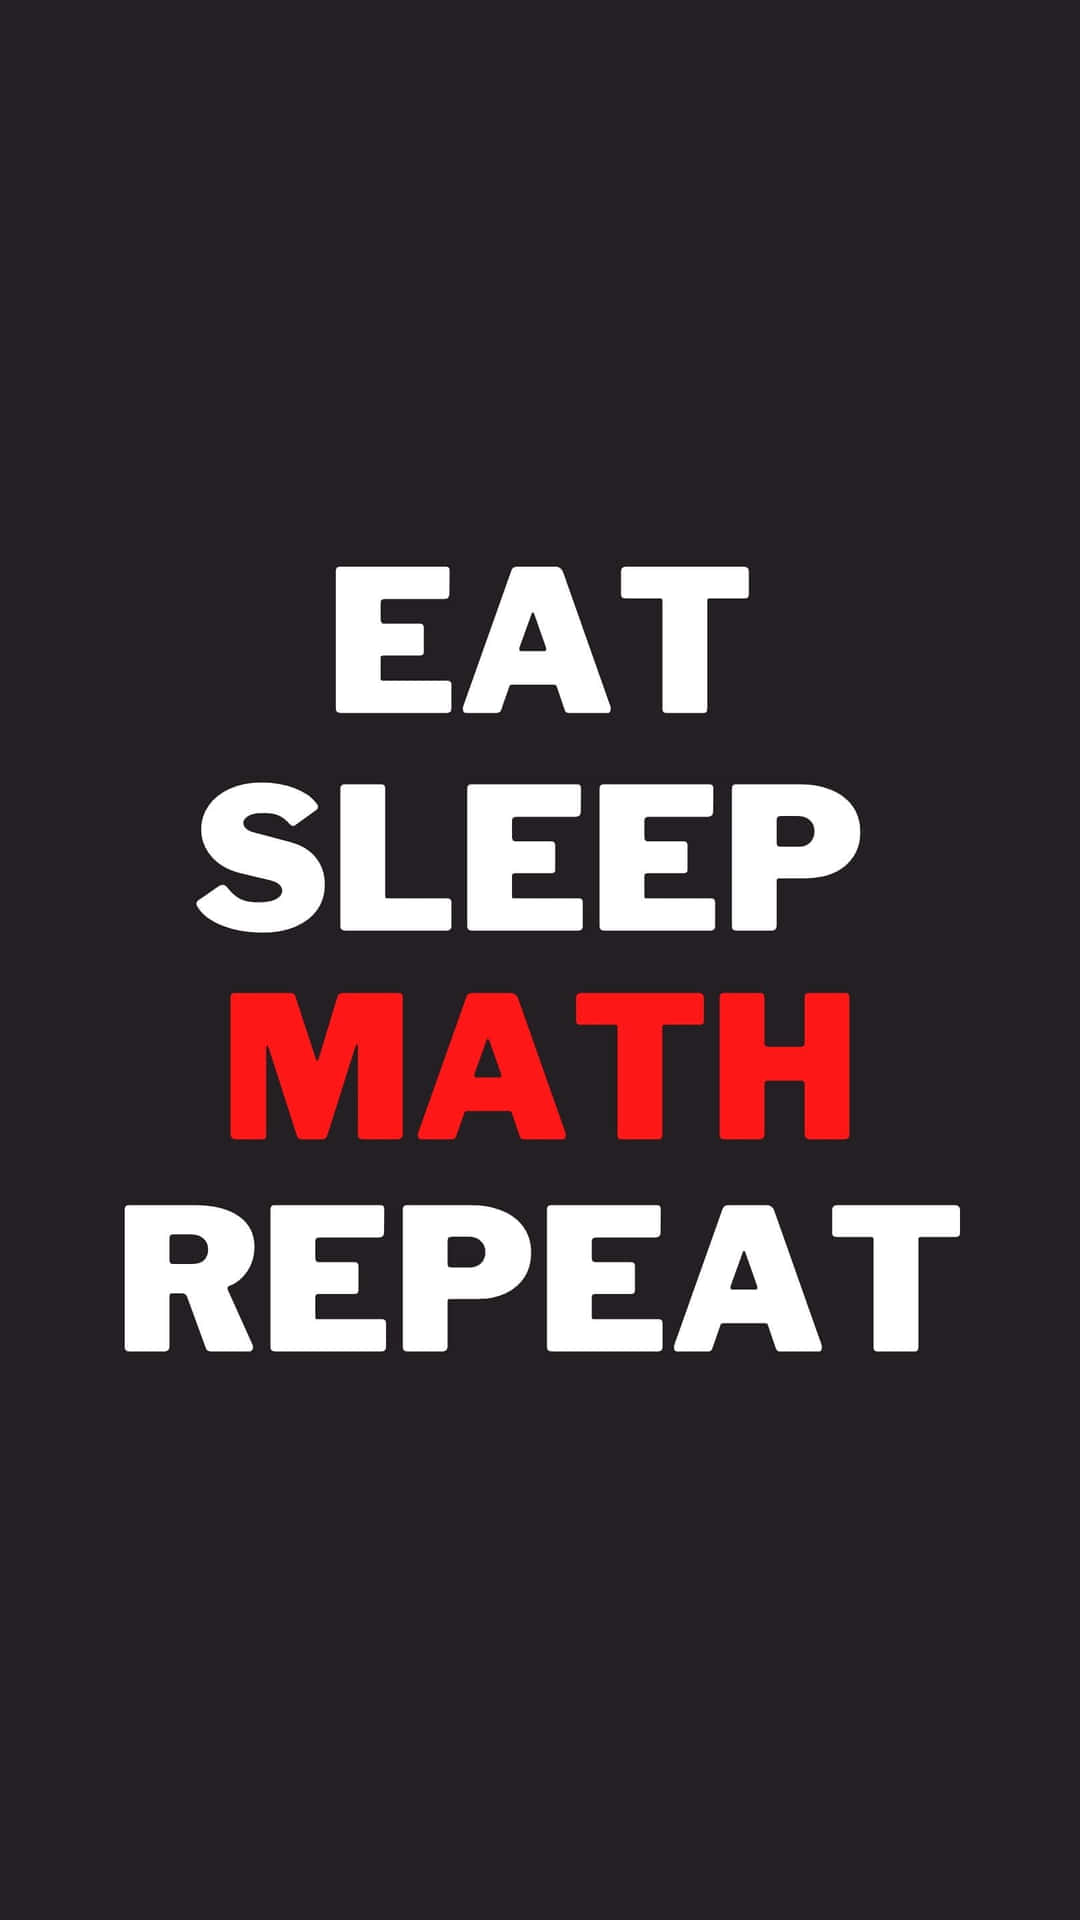 Essenschlafen Mathe Wiederholen - Essen Schlafen Mathe Wiederholen Wallpaper